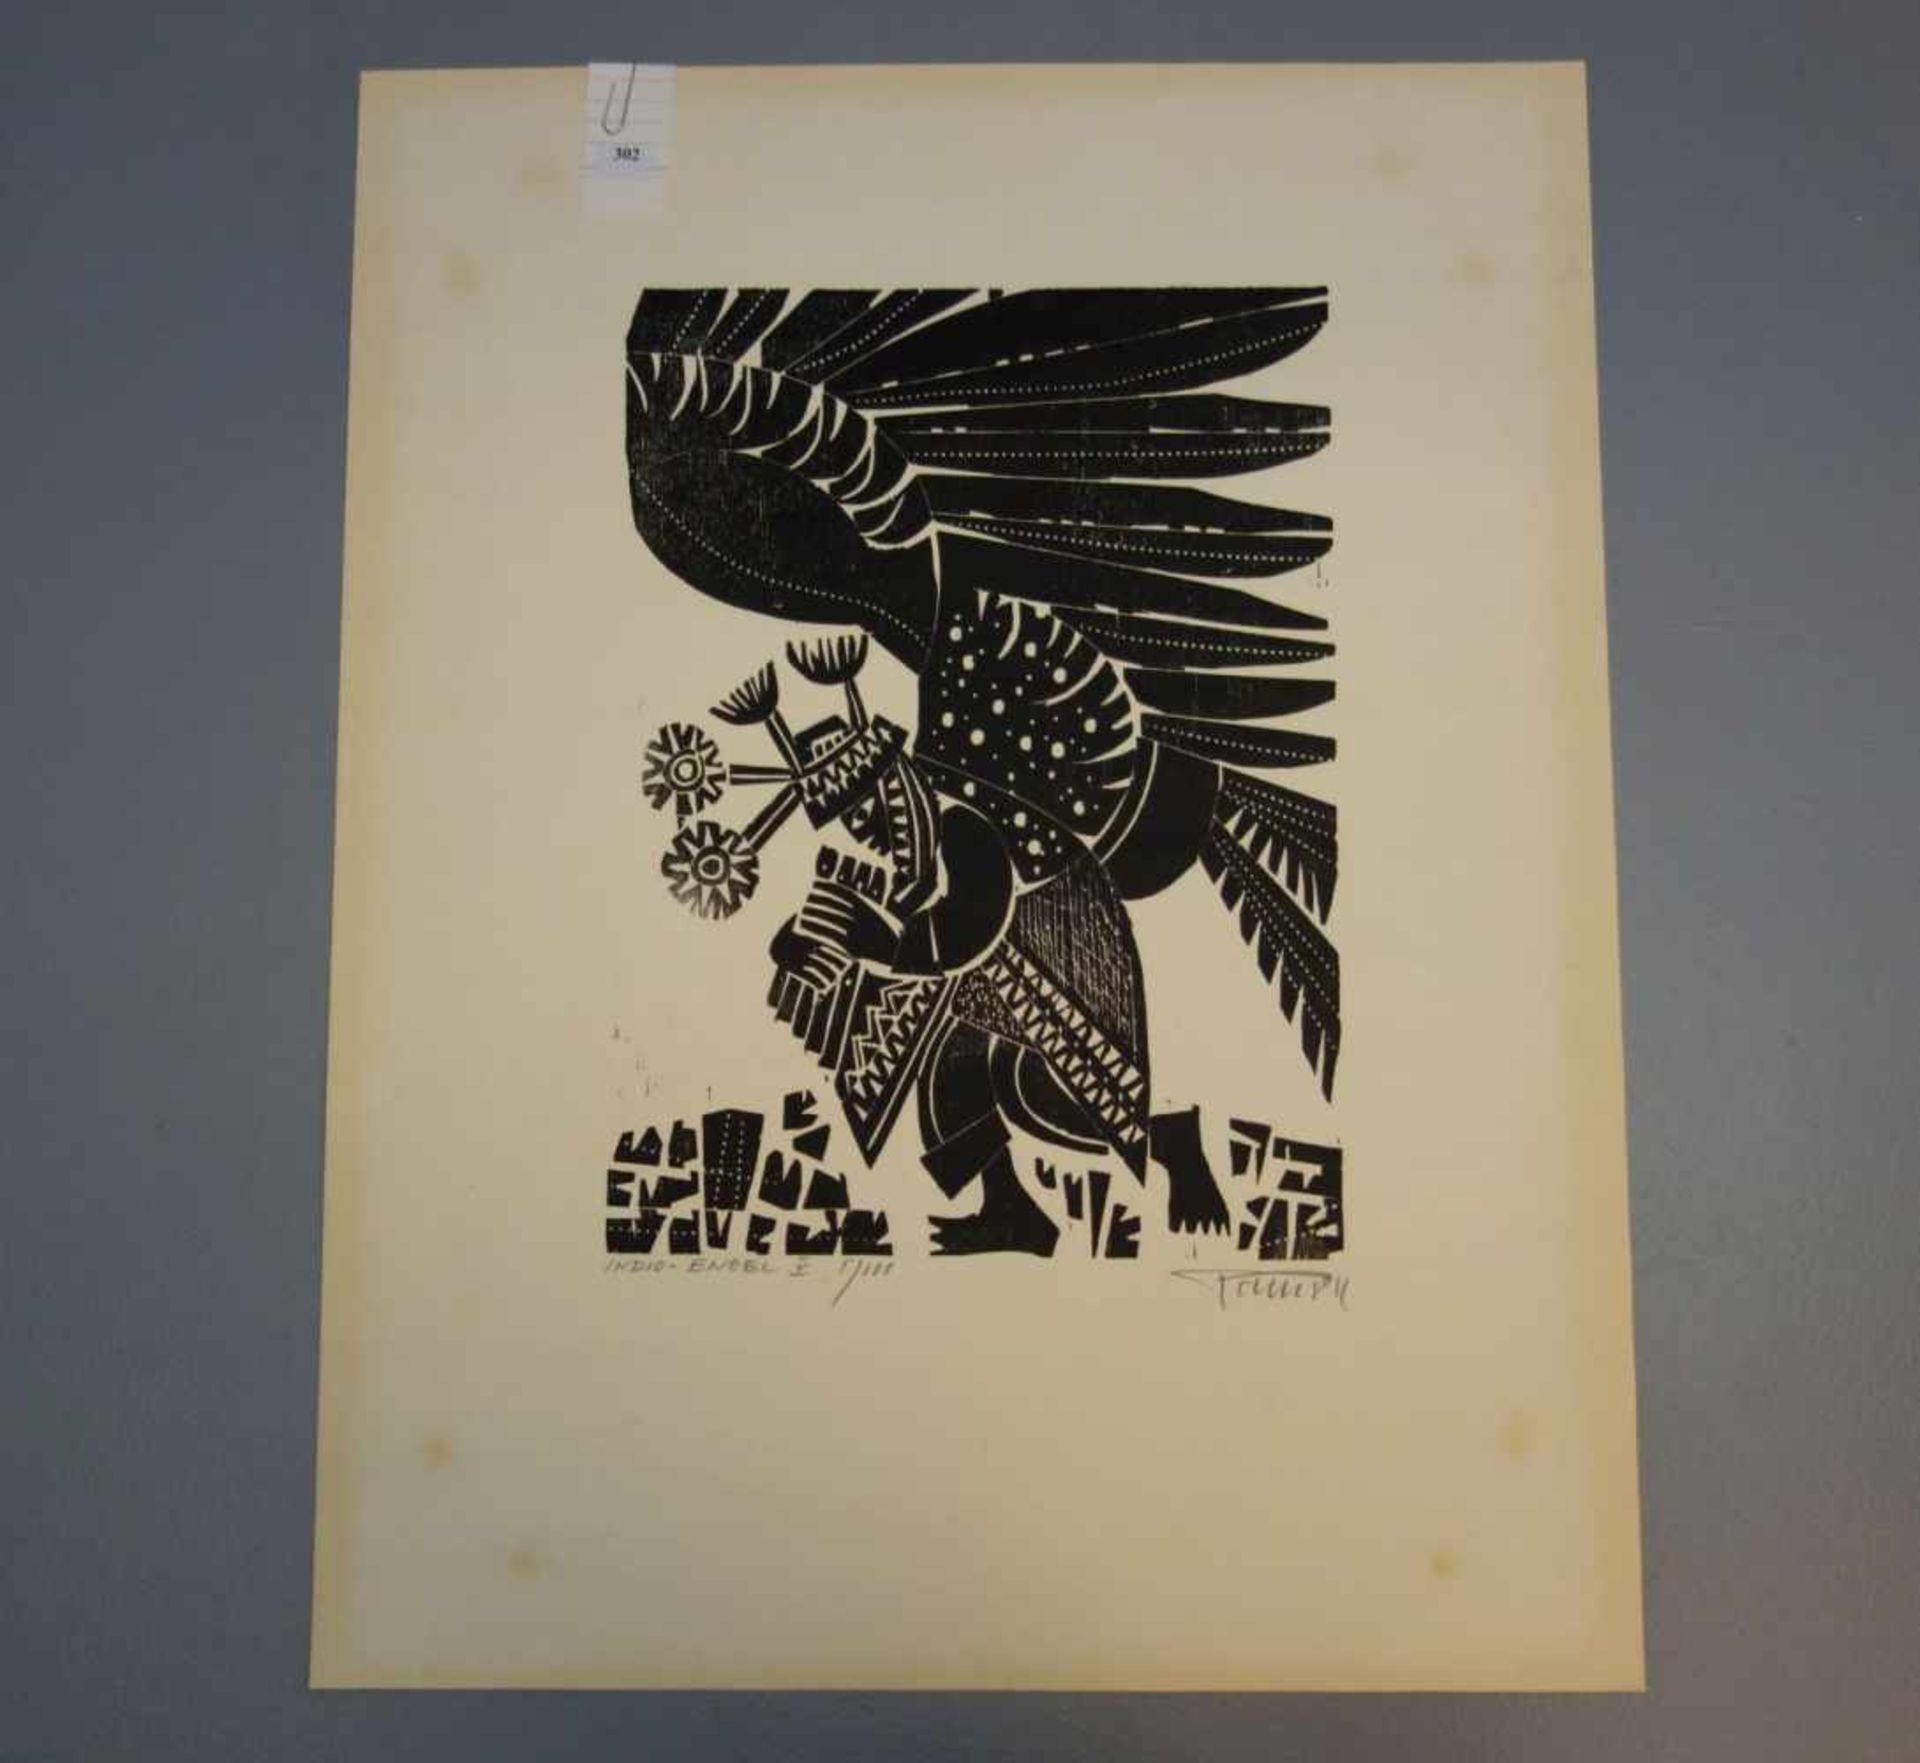 POHL, ALFRED (geb. 1928 in Essen), Holzschnitt auf Bütten / woodcut: "Indio-Engel V", mit